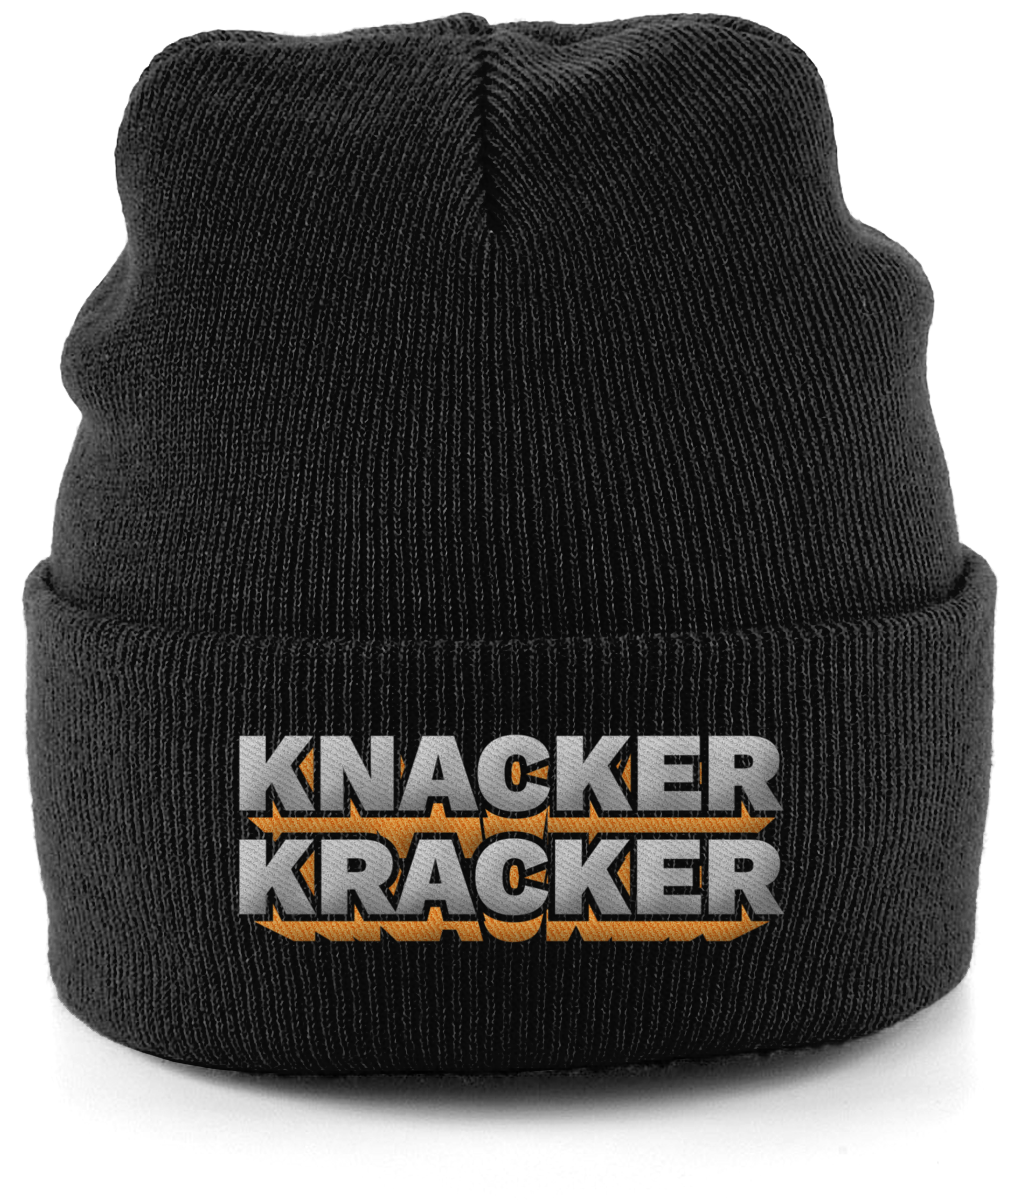 Knacker Kracker Beanie